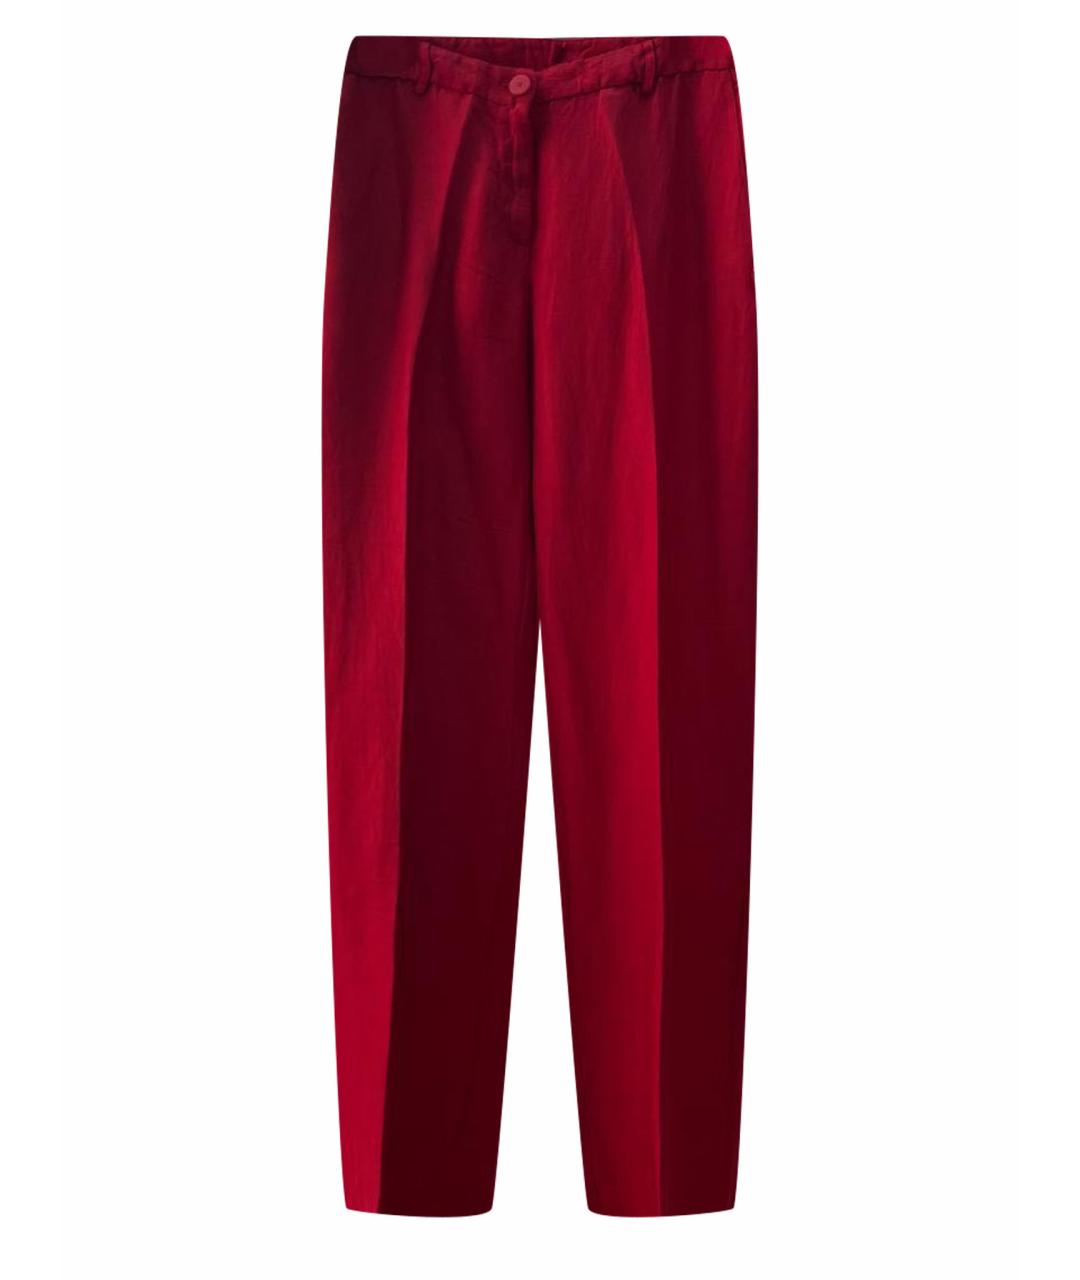 TWIN-SET Красные льняные брюки широкие, фото 1